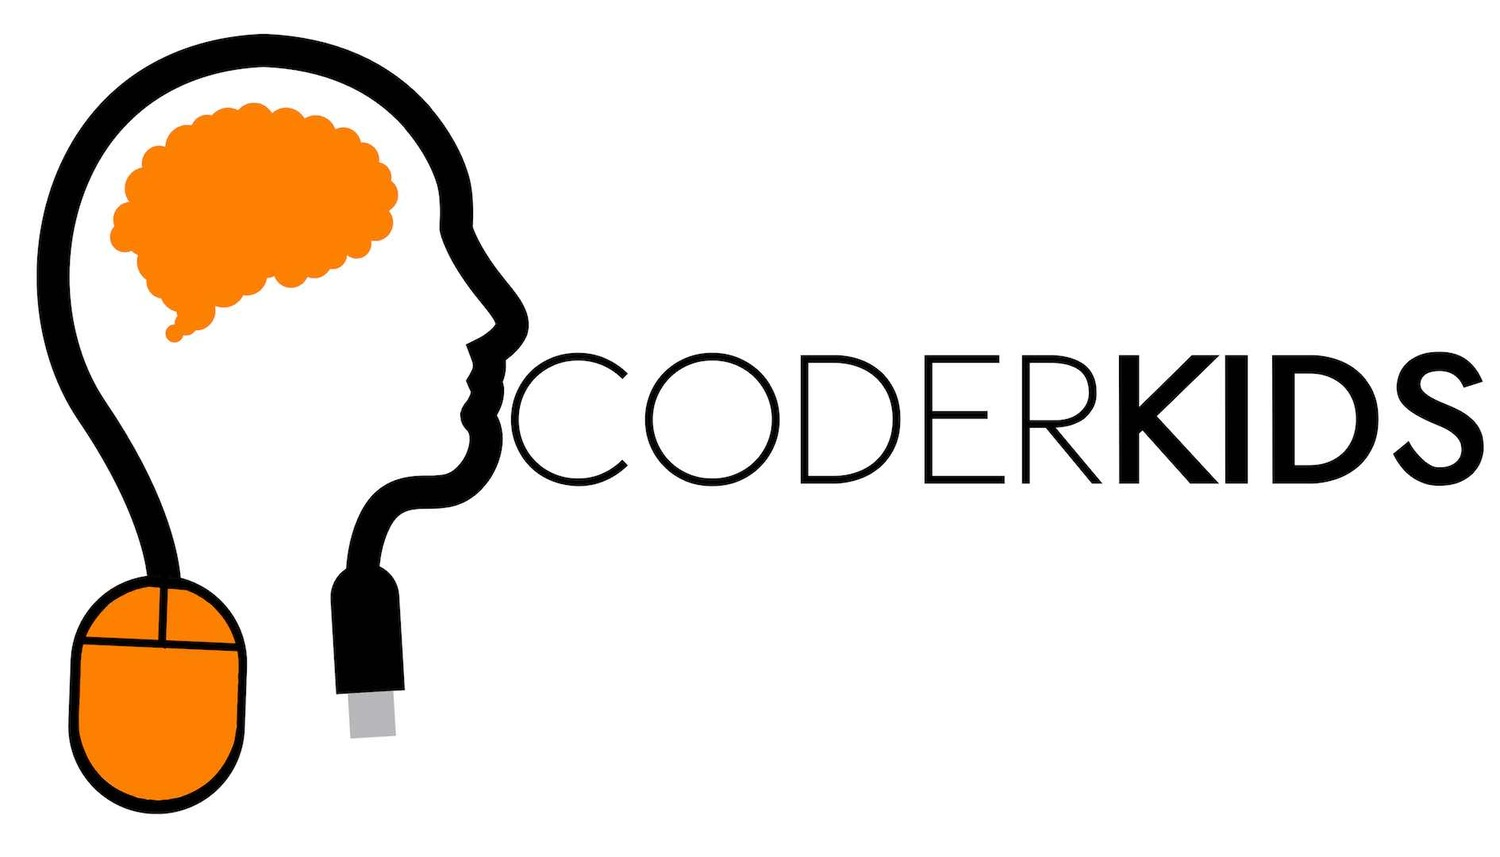 Coder Kids